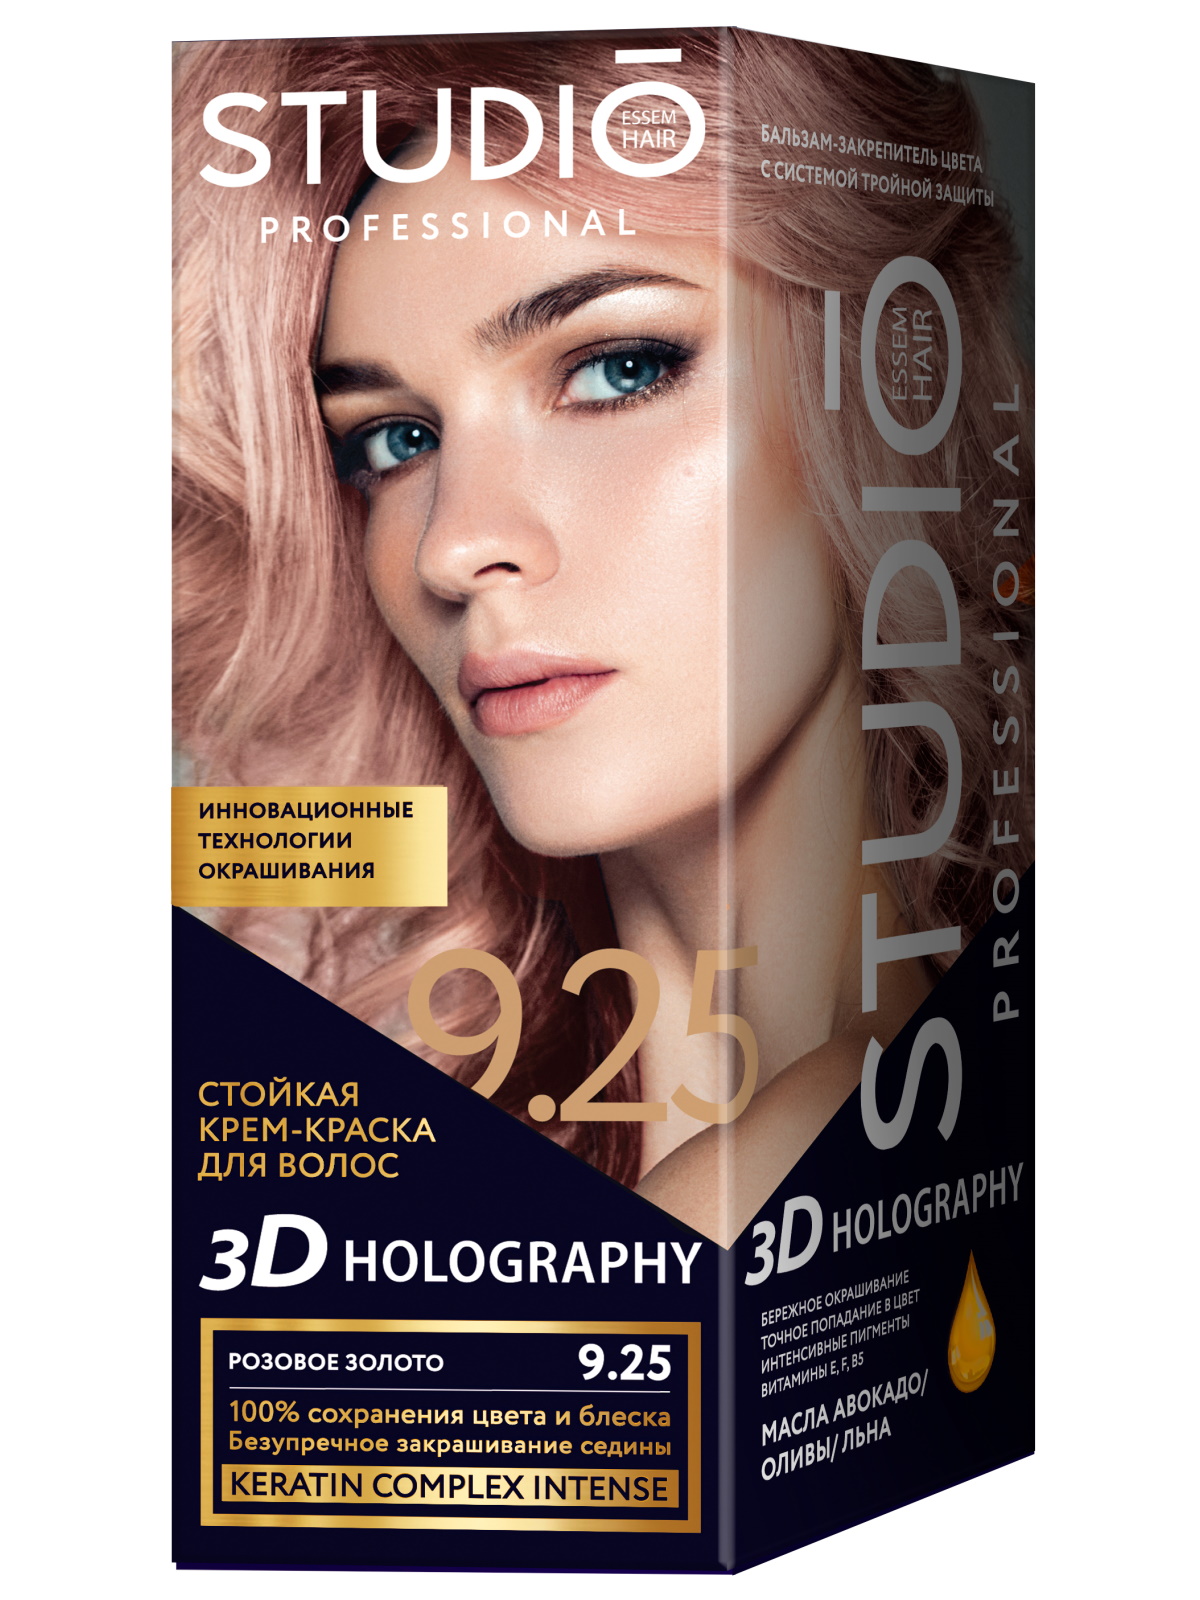 Комплект 3D HOLOGRAPHY для окрашивания STUDIO PROFESSIONAL 9.25 розовое золото 2*50+15 мл комплект 3d holography studio professional 3 56 темная вишня 2 50 15 мл